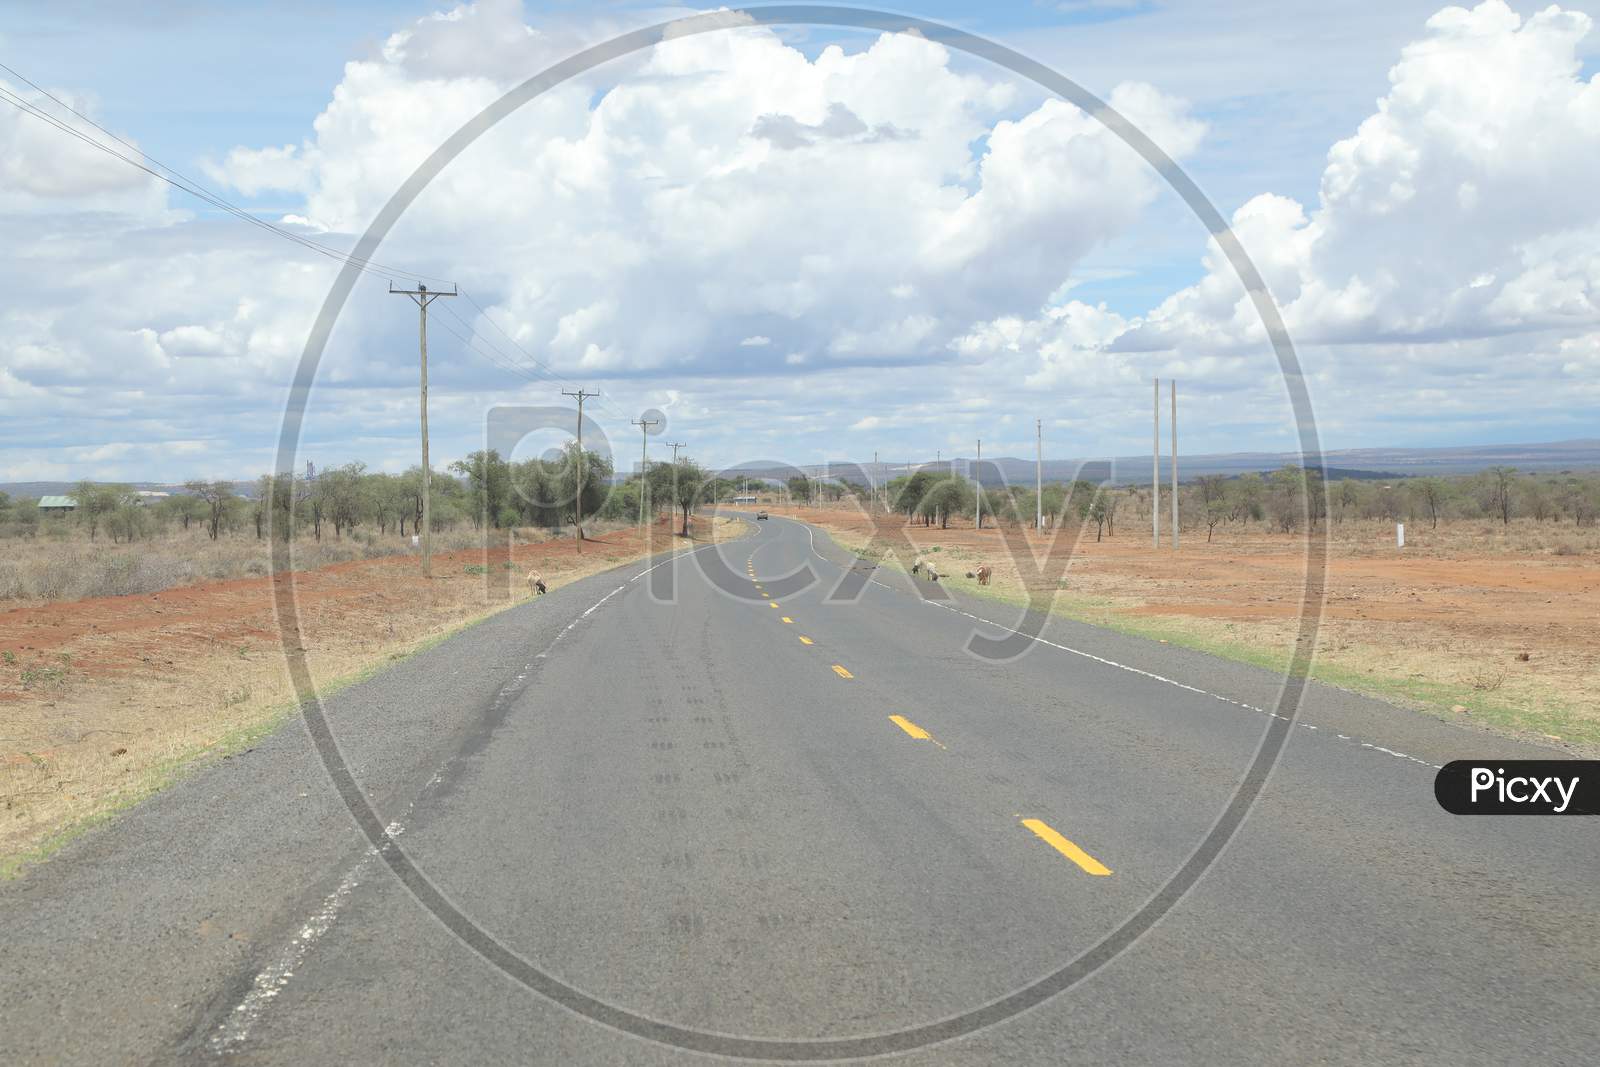 An Empty roadway in Kenya